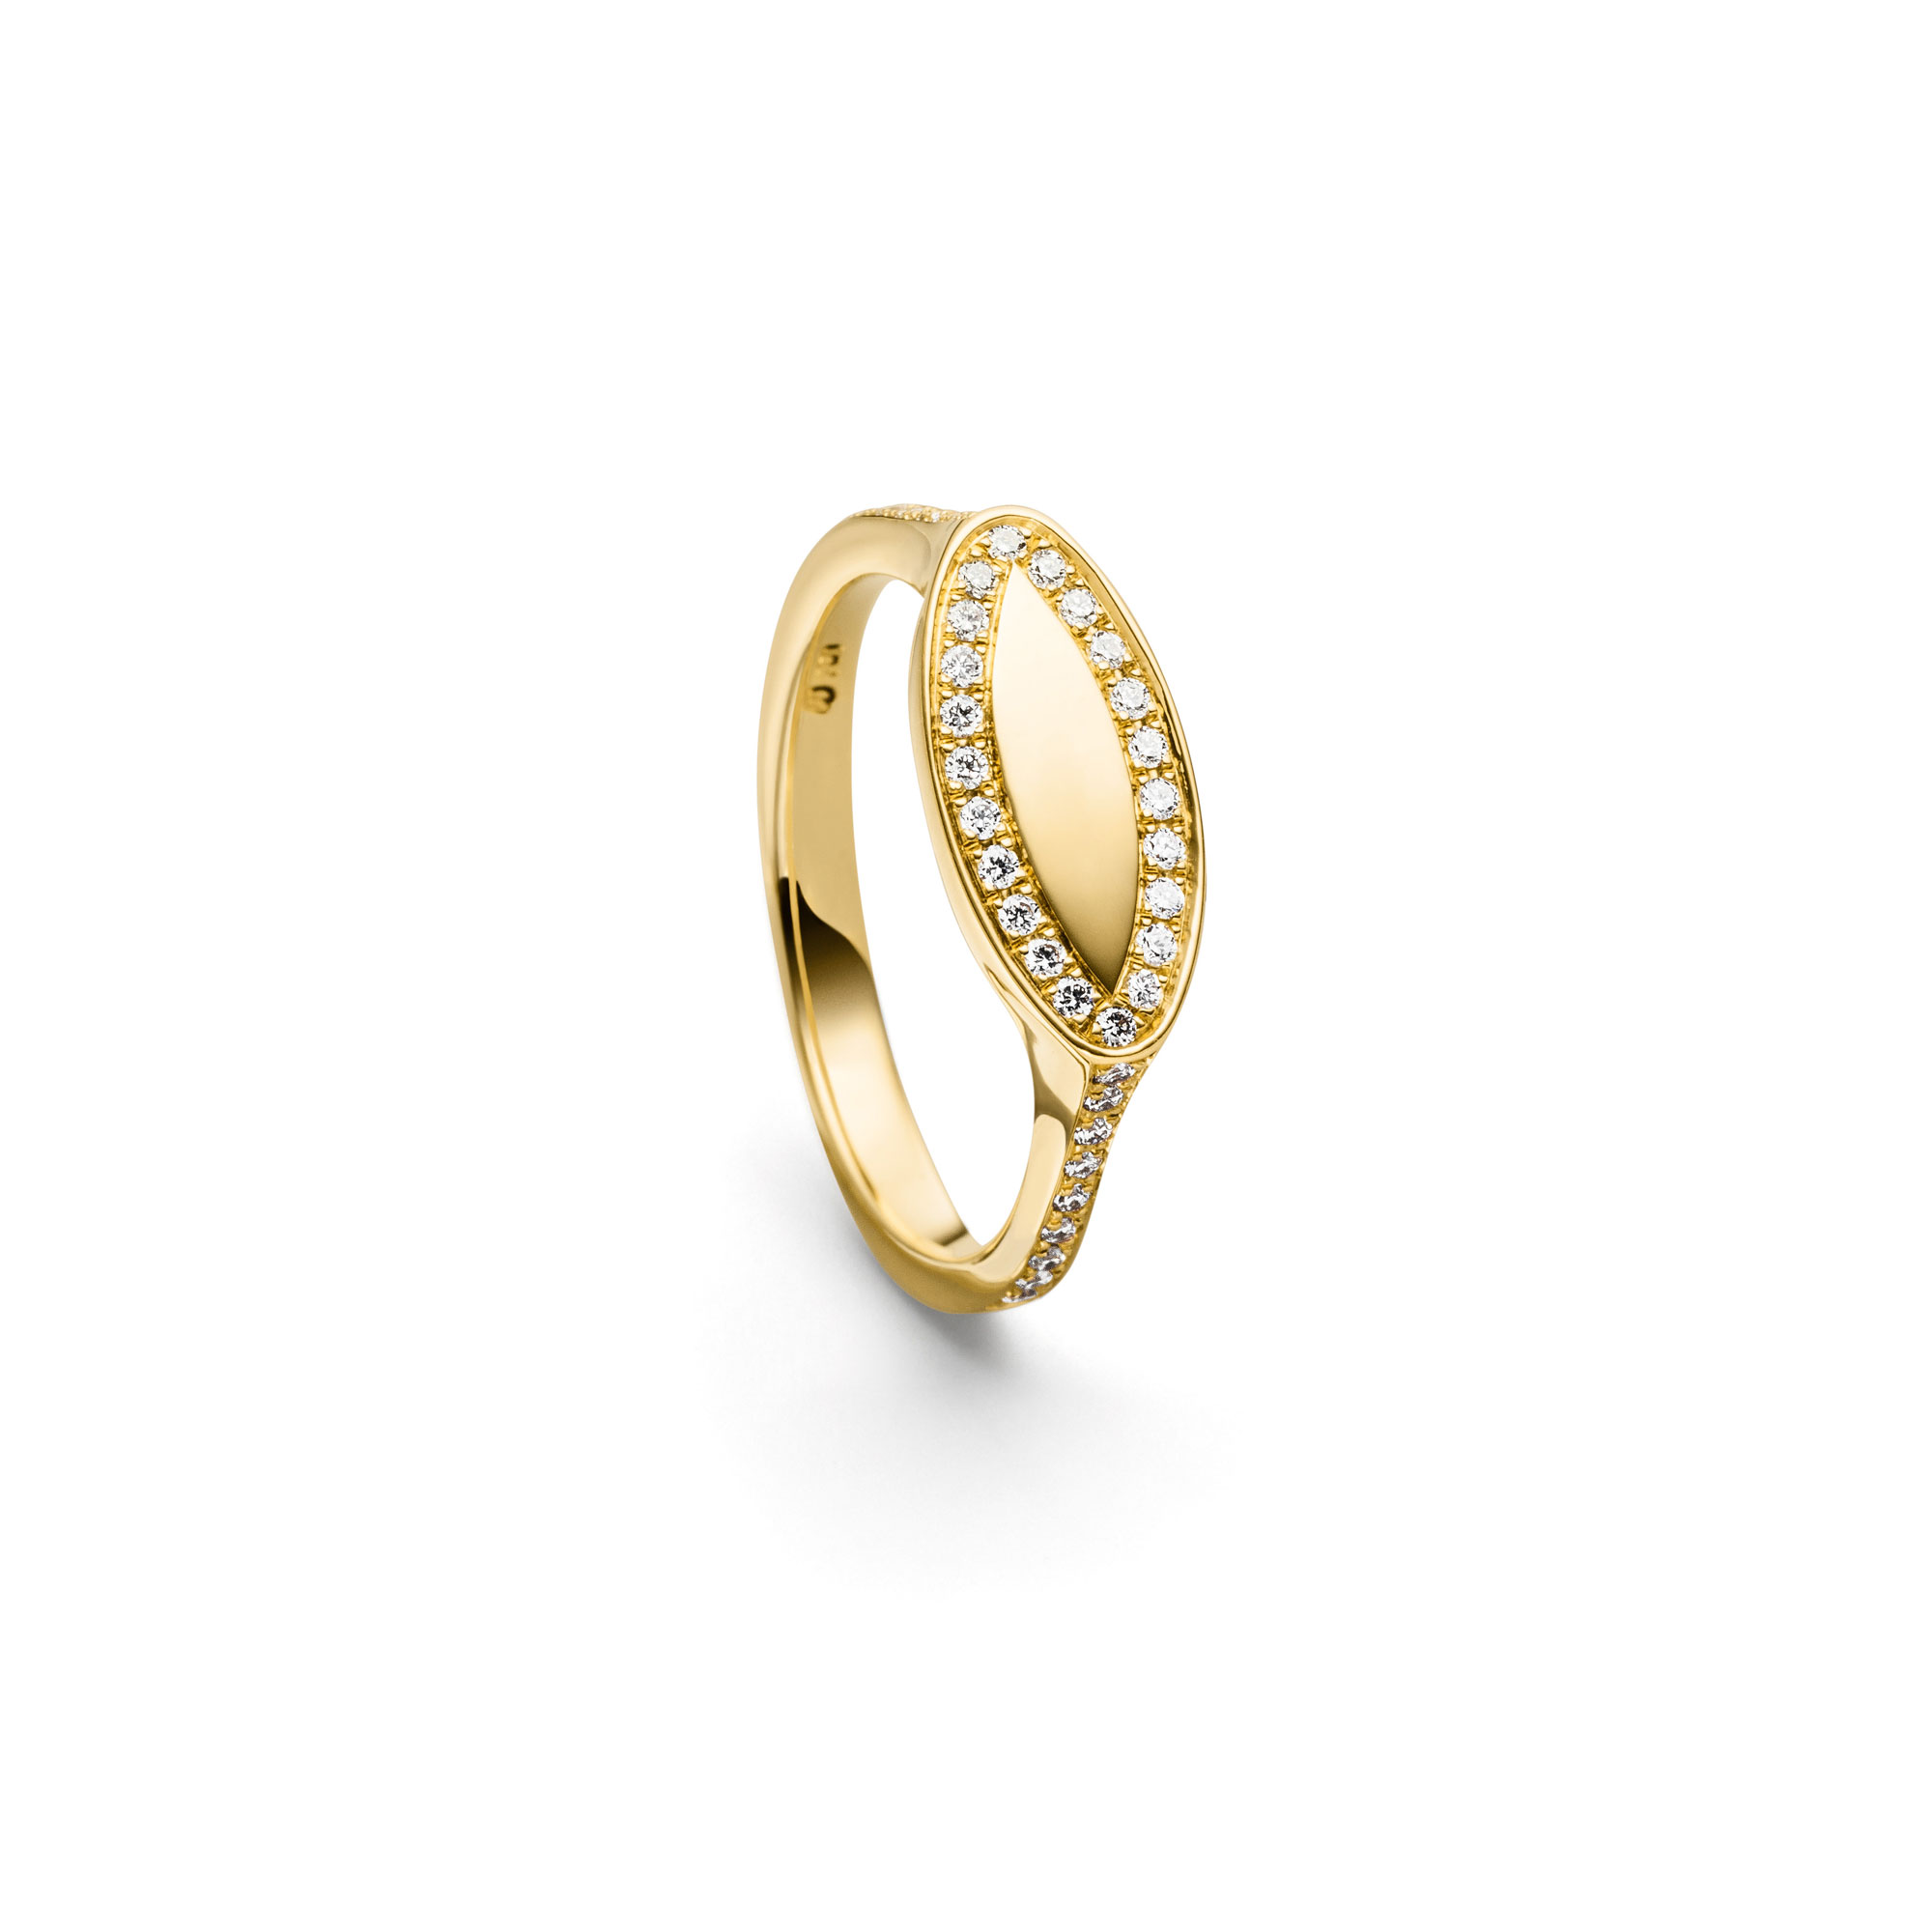 Gelbgold Ring "Fortuna Elypso" mit Brillanten von Atelier Fridrich bei Juwelier Fridrich in München